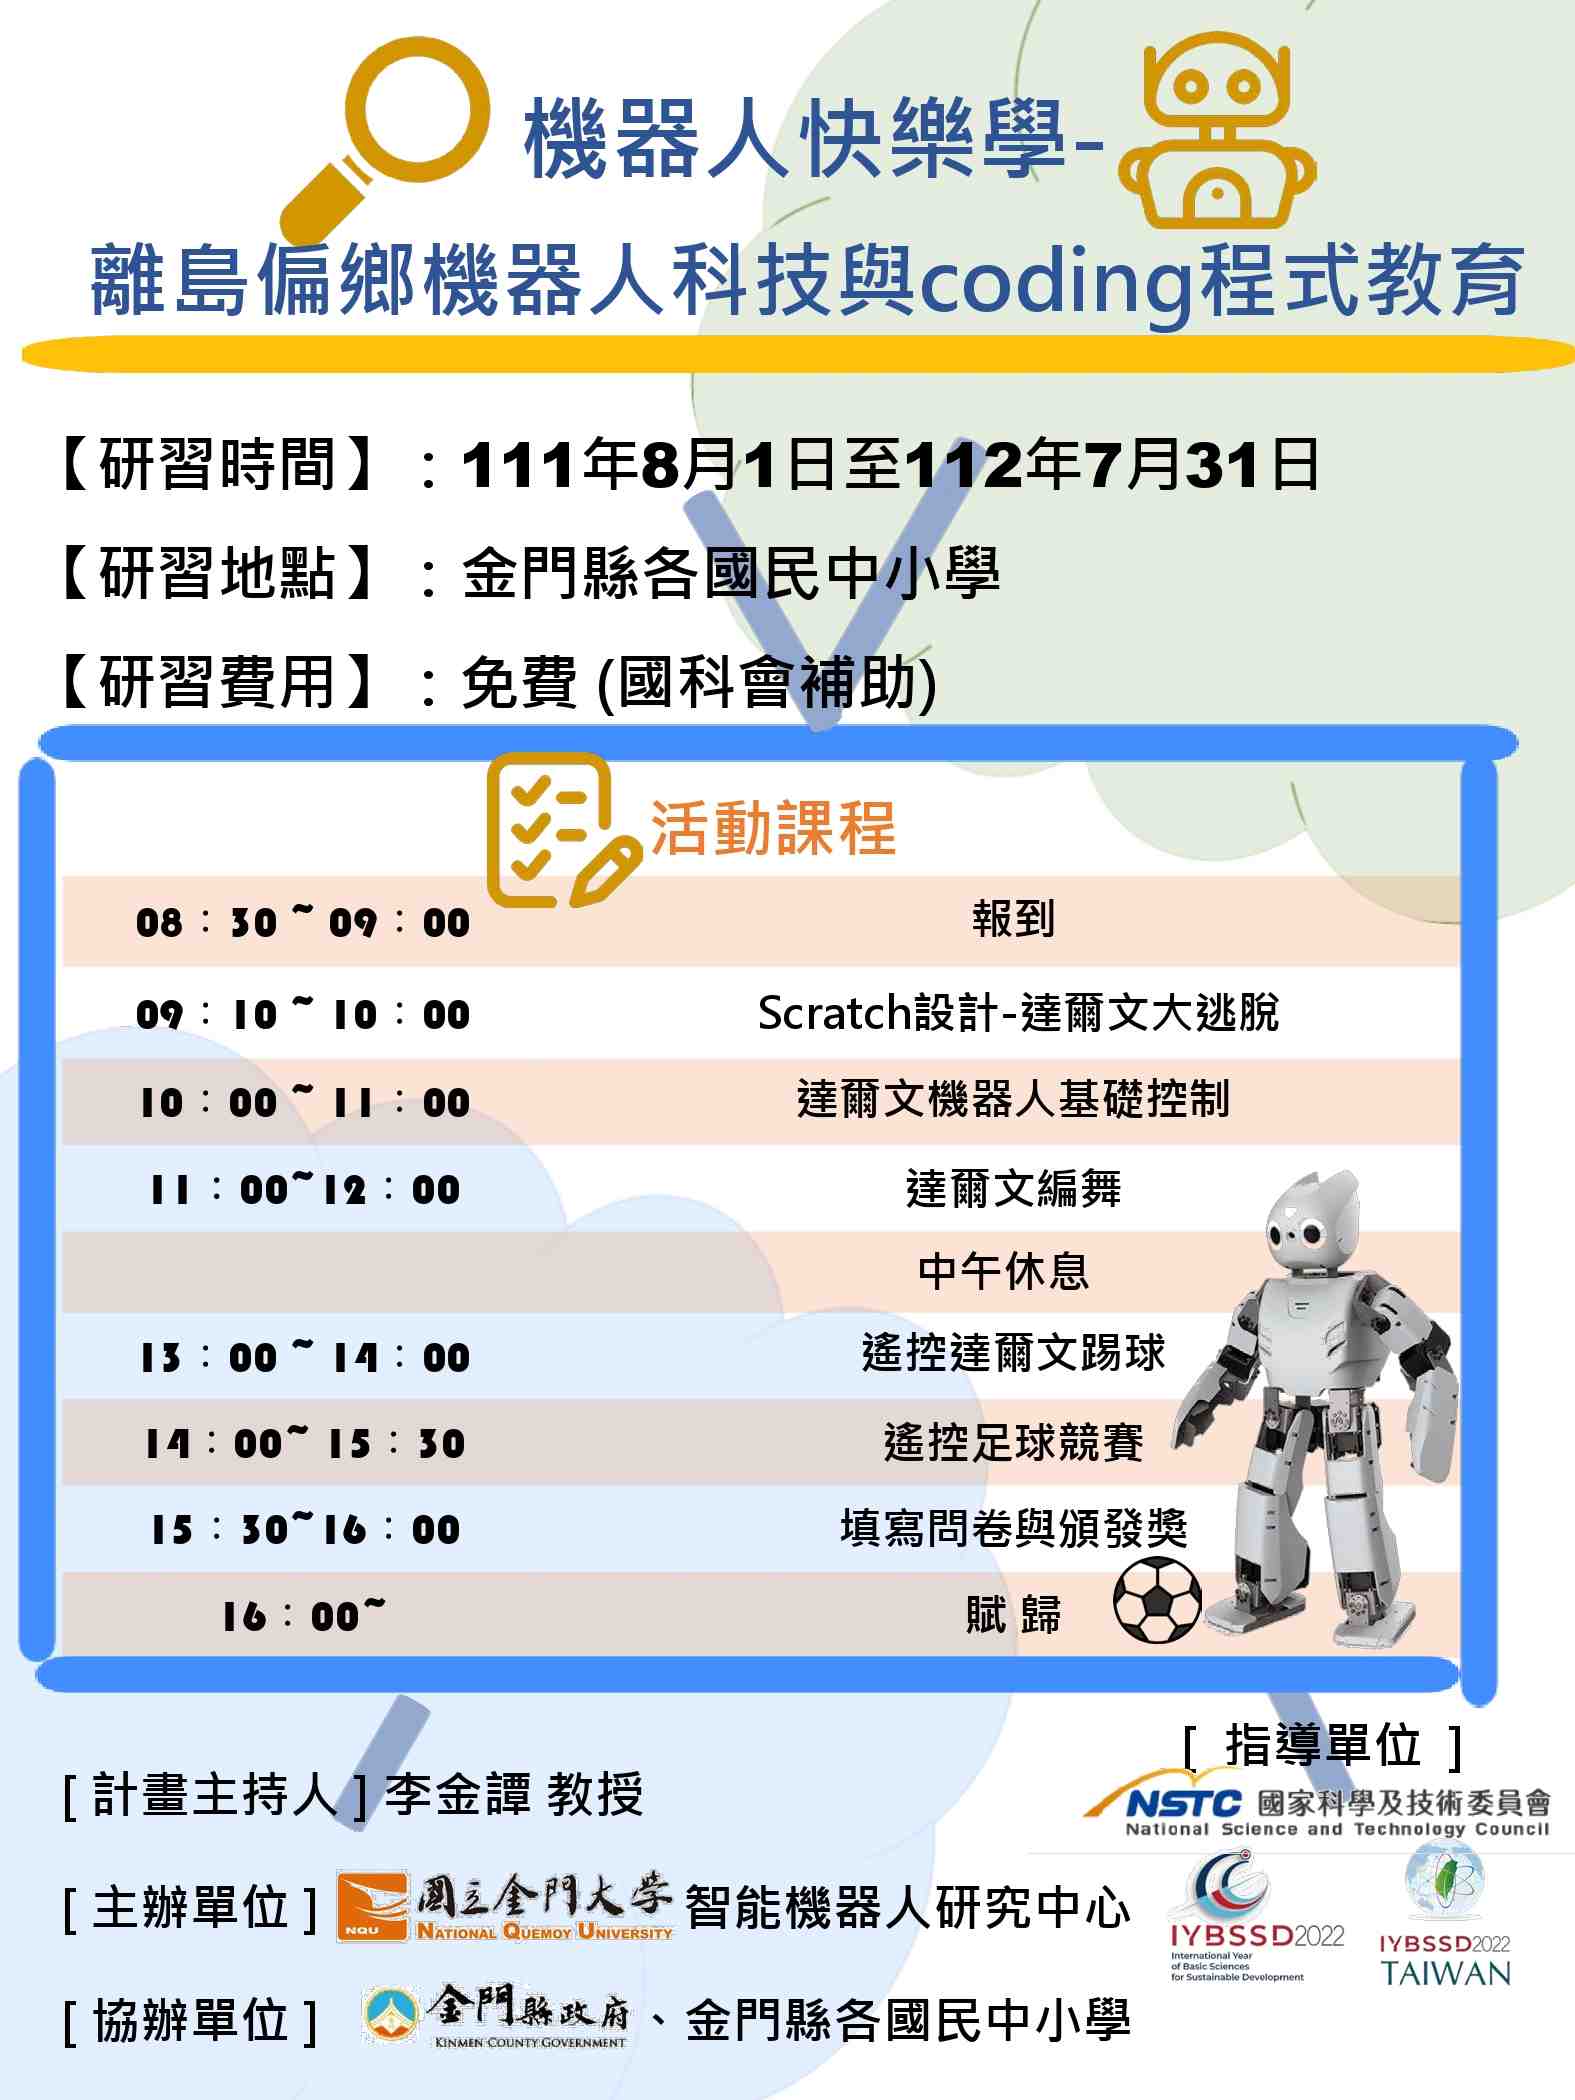 111年度科普活動 機器人快樂學-"離島偏鄉機器人科技與coding程式教育宣傳用圖片/海報